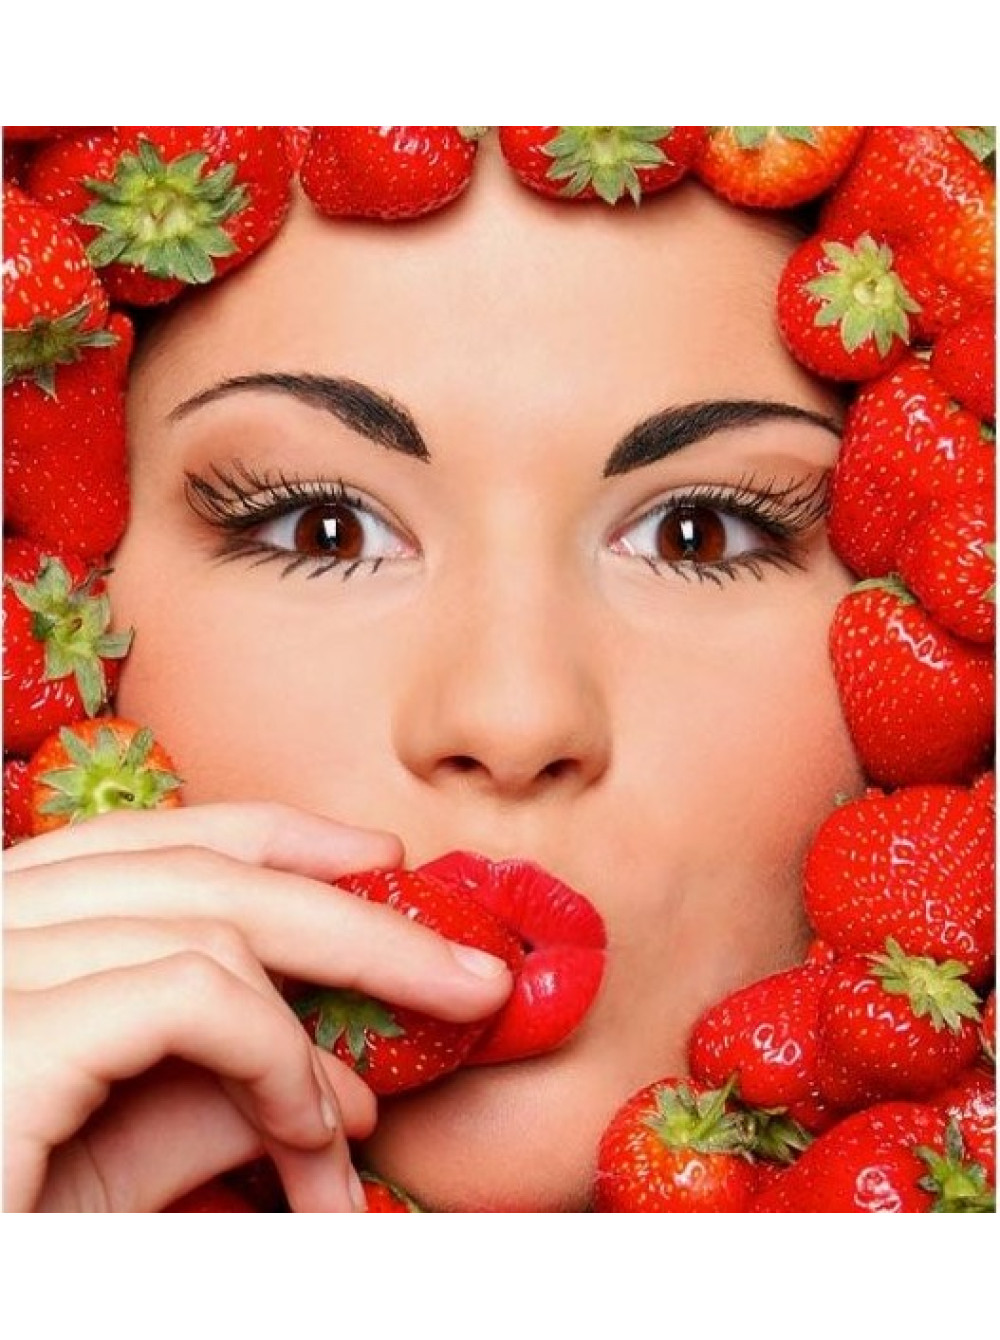 Лицом ягодка. Красивые девушки с фруктами. Девушка с клубникой. Фотосессия с фруктами. Ягода с лицом.